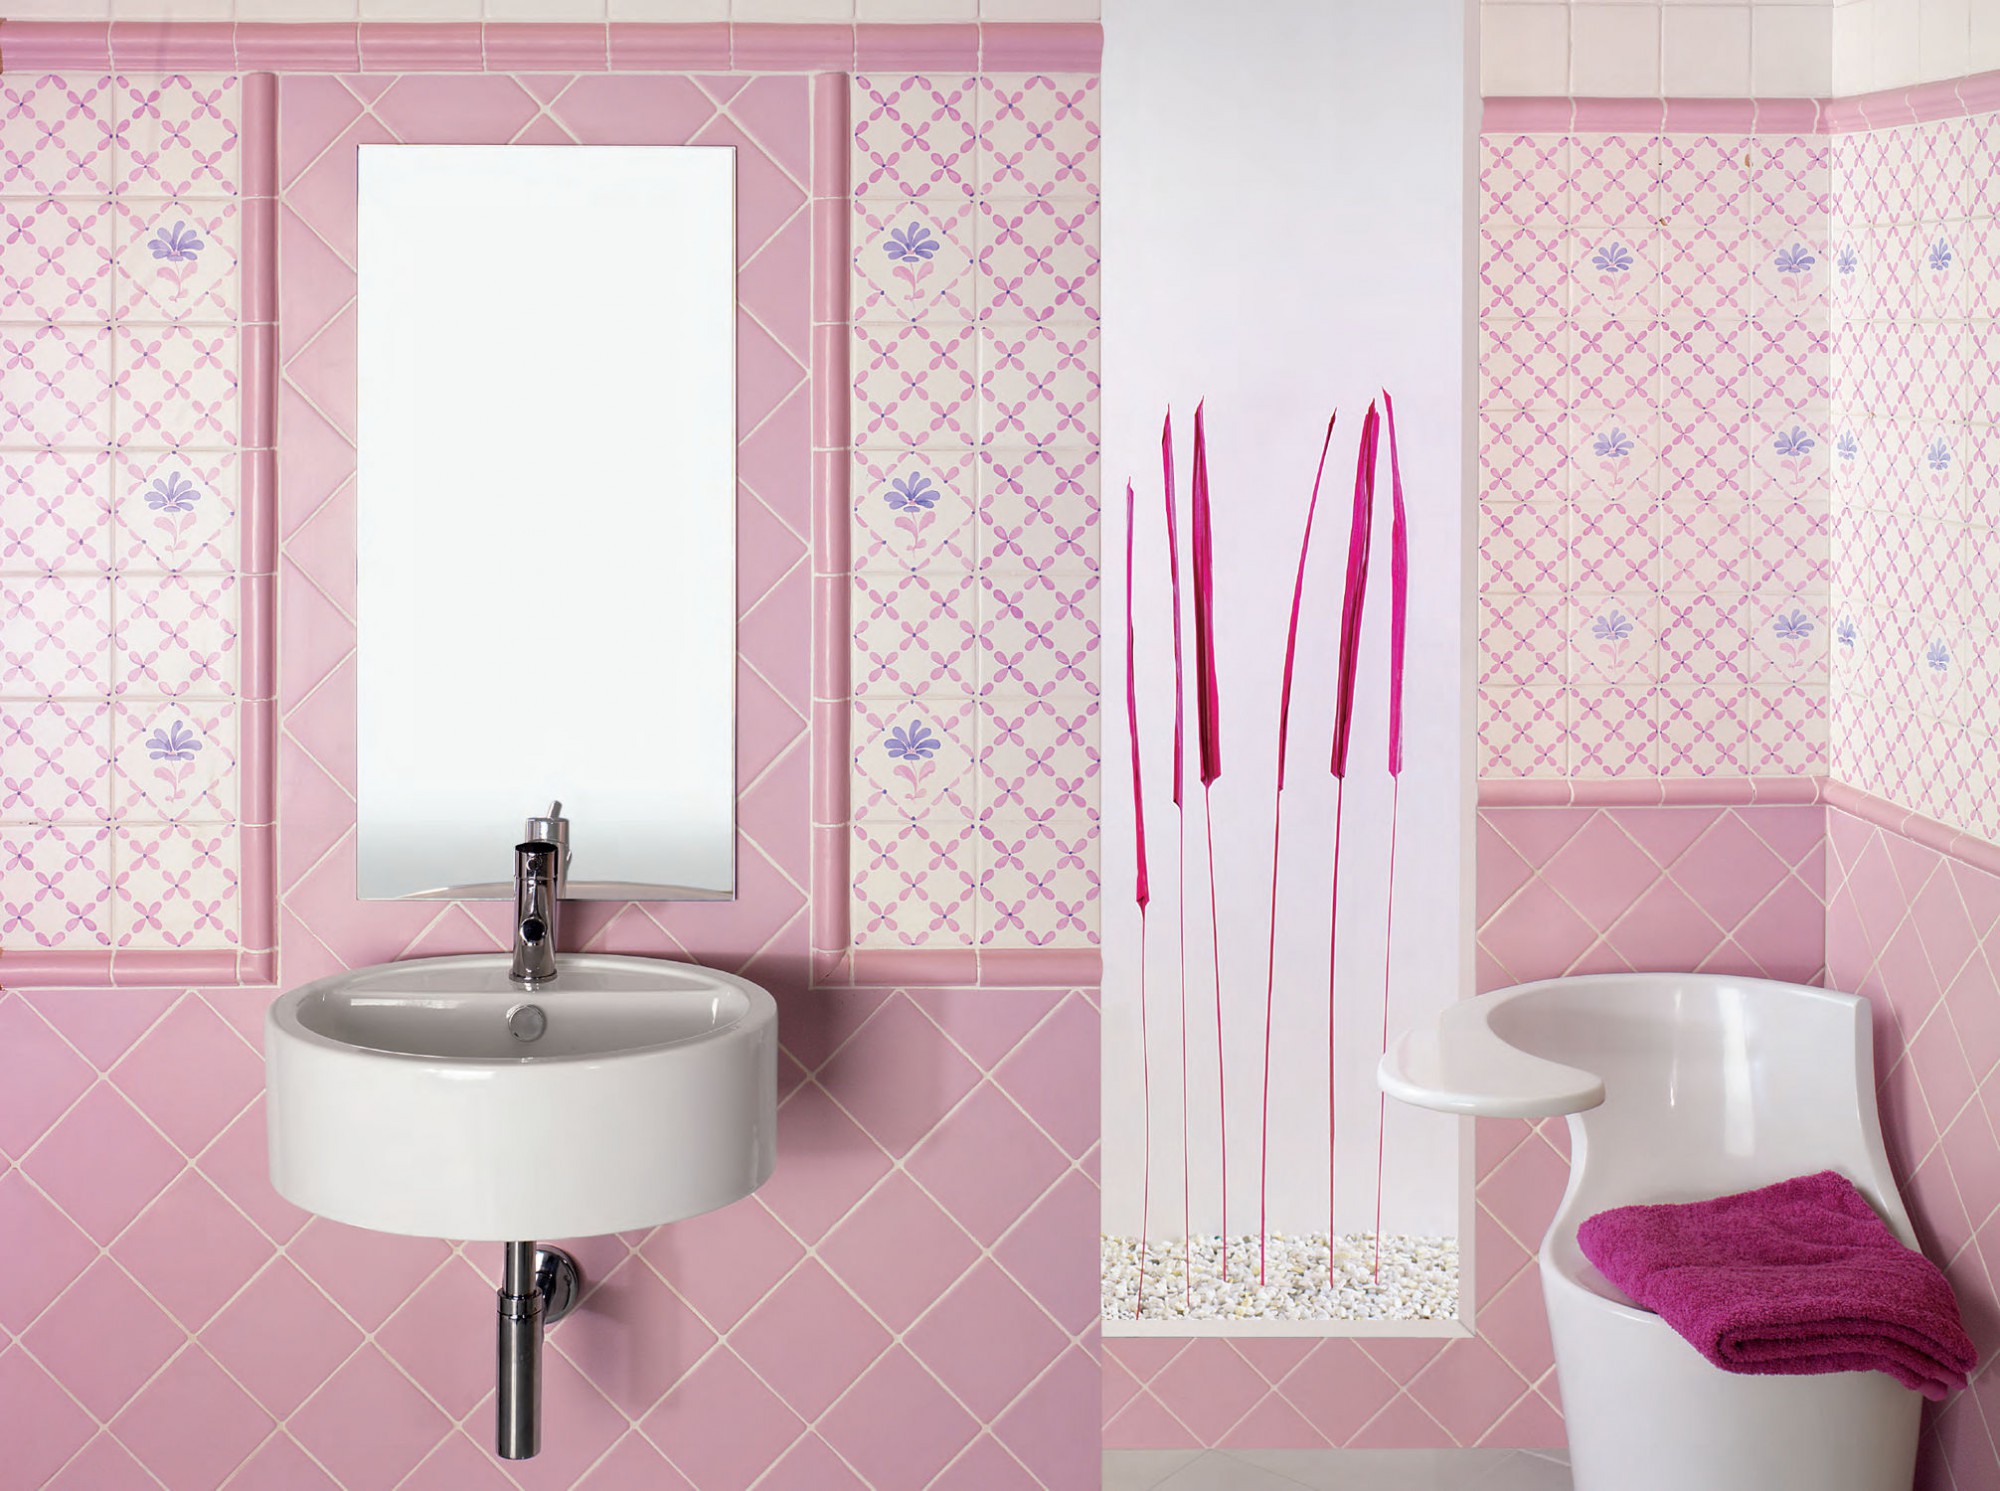 Розово-белая плитка в отделке ванной комнаты